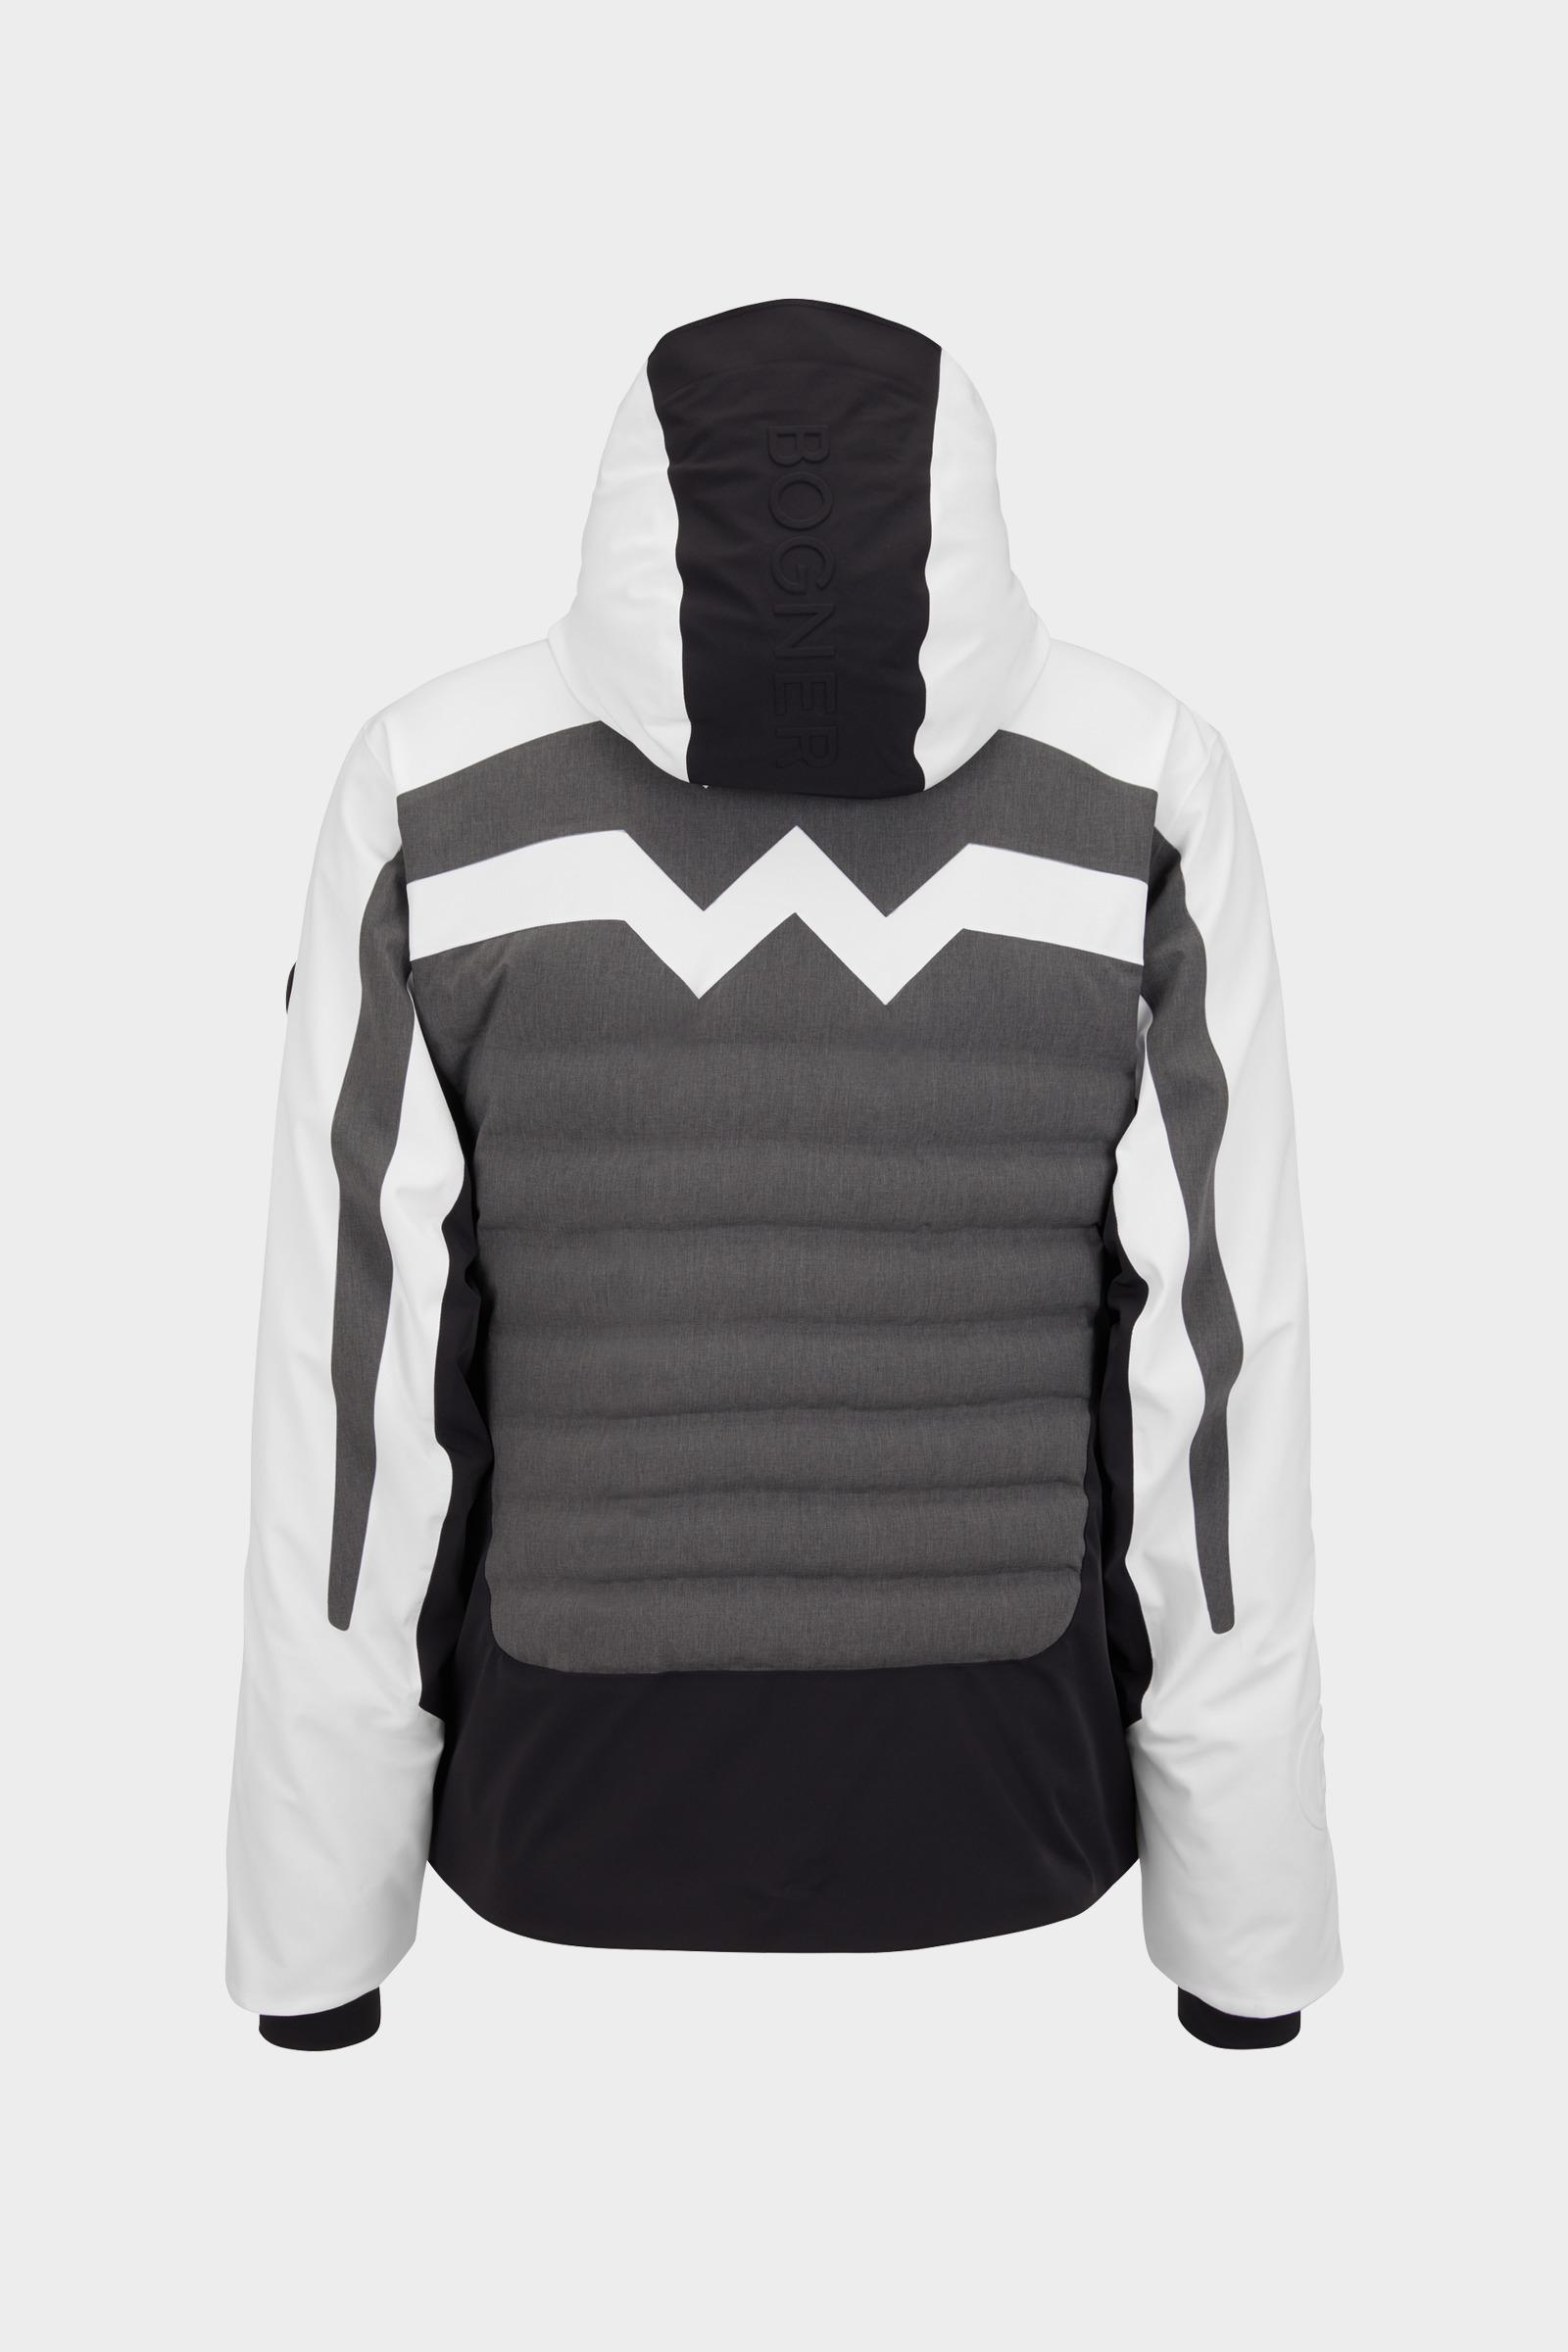 Bogner Synthetic Lech Ski Jacket In Melange Gray/white for Men - Lyst